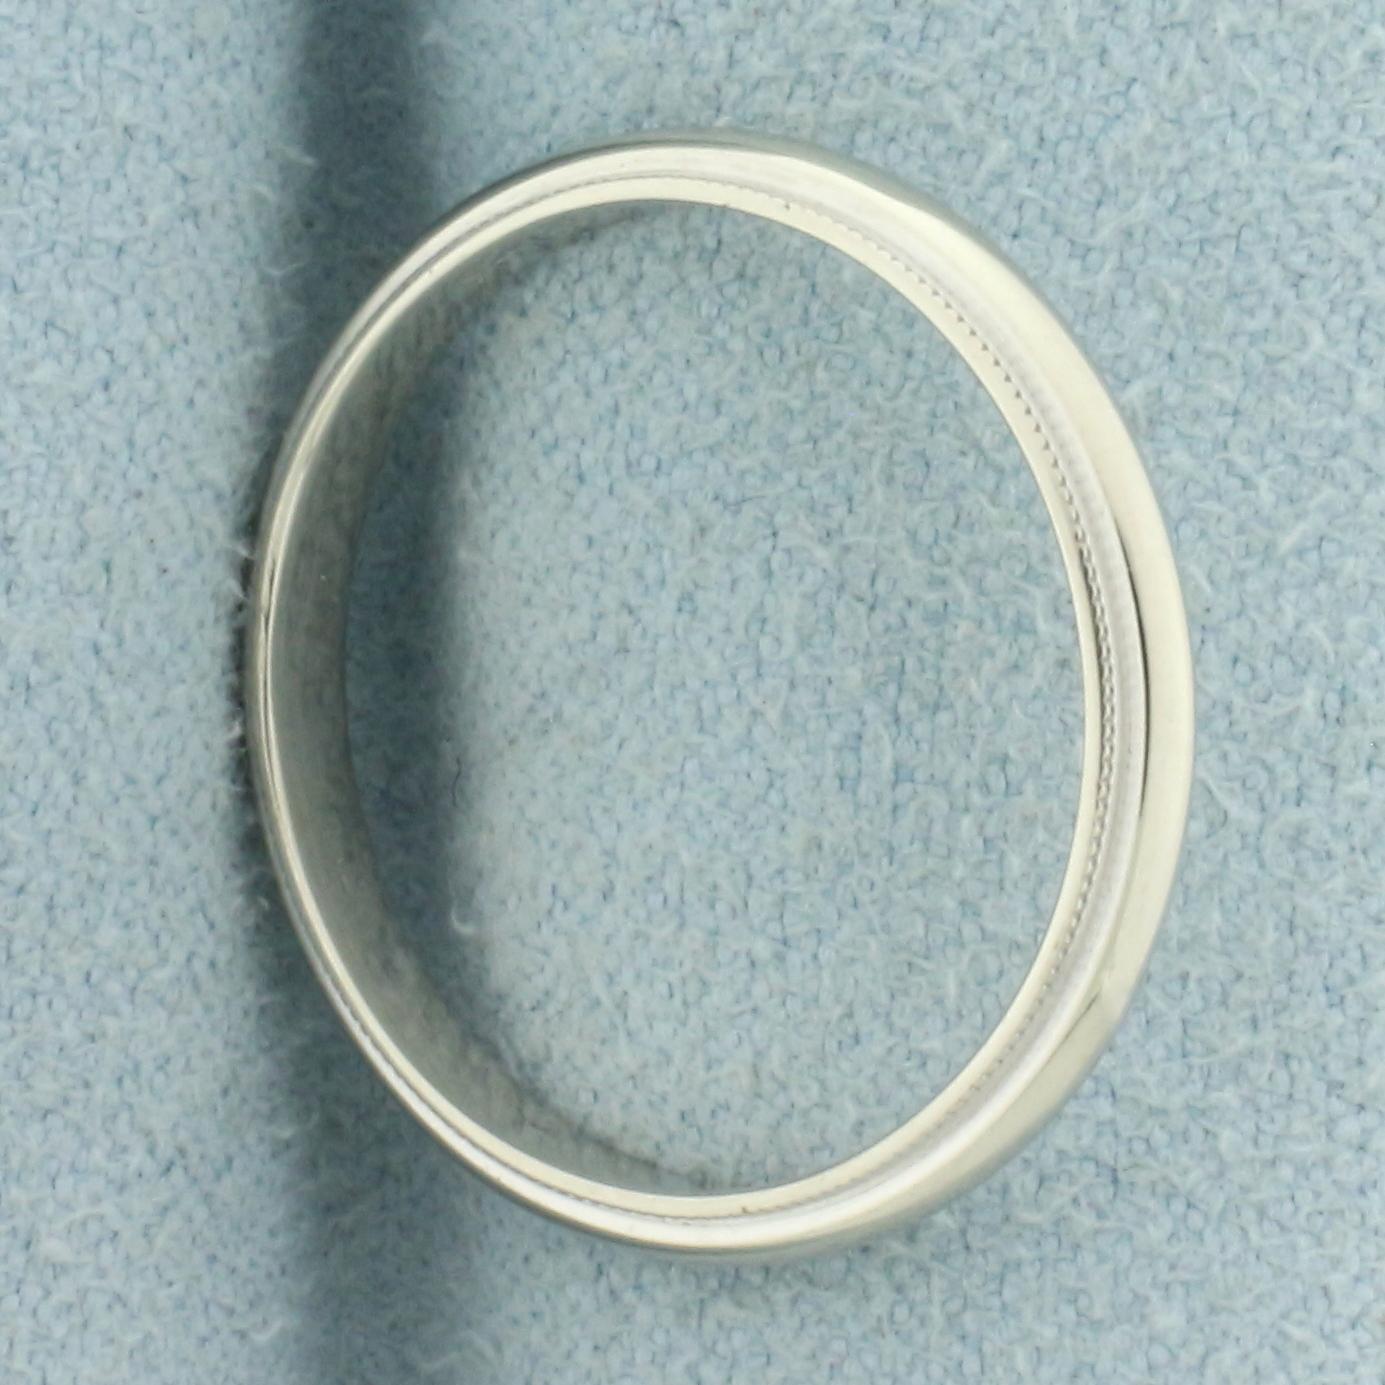 Milgrain Beaded Edge Wedding Ring Band In 14k White Gold